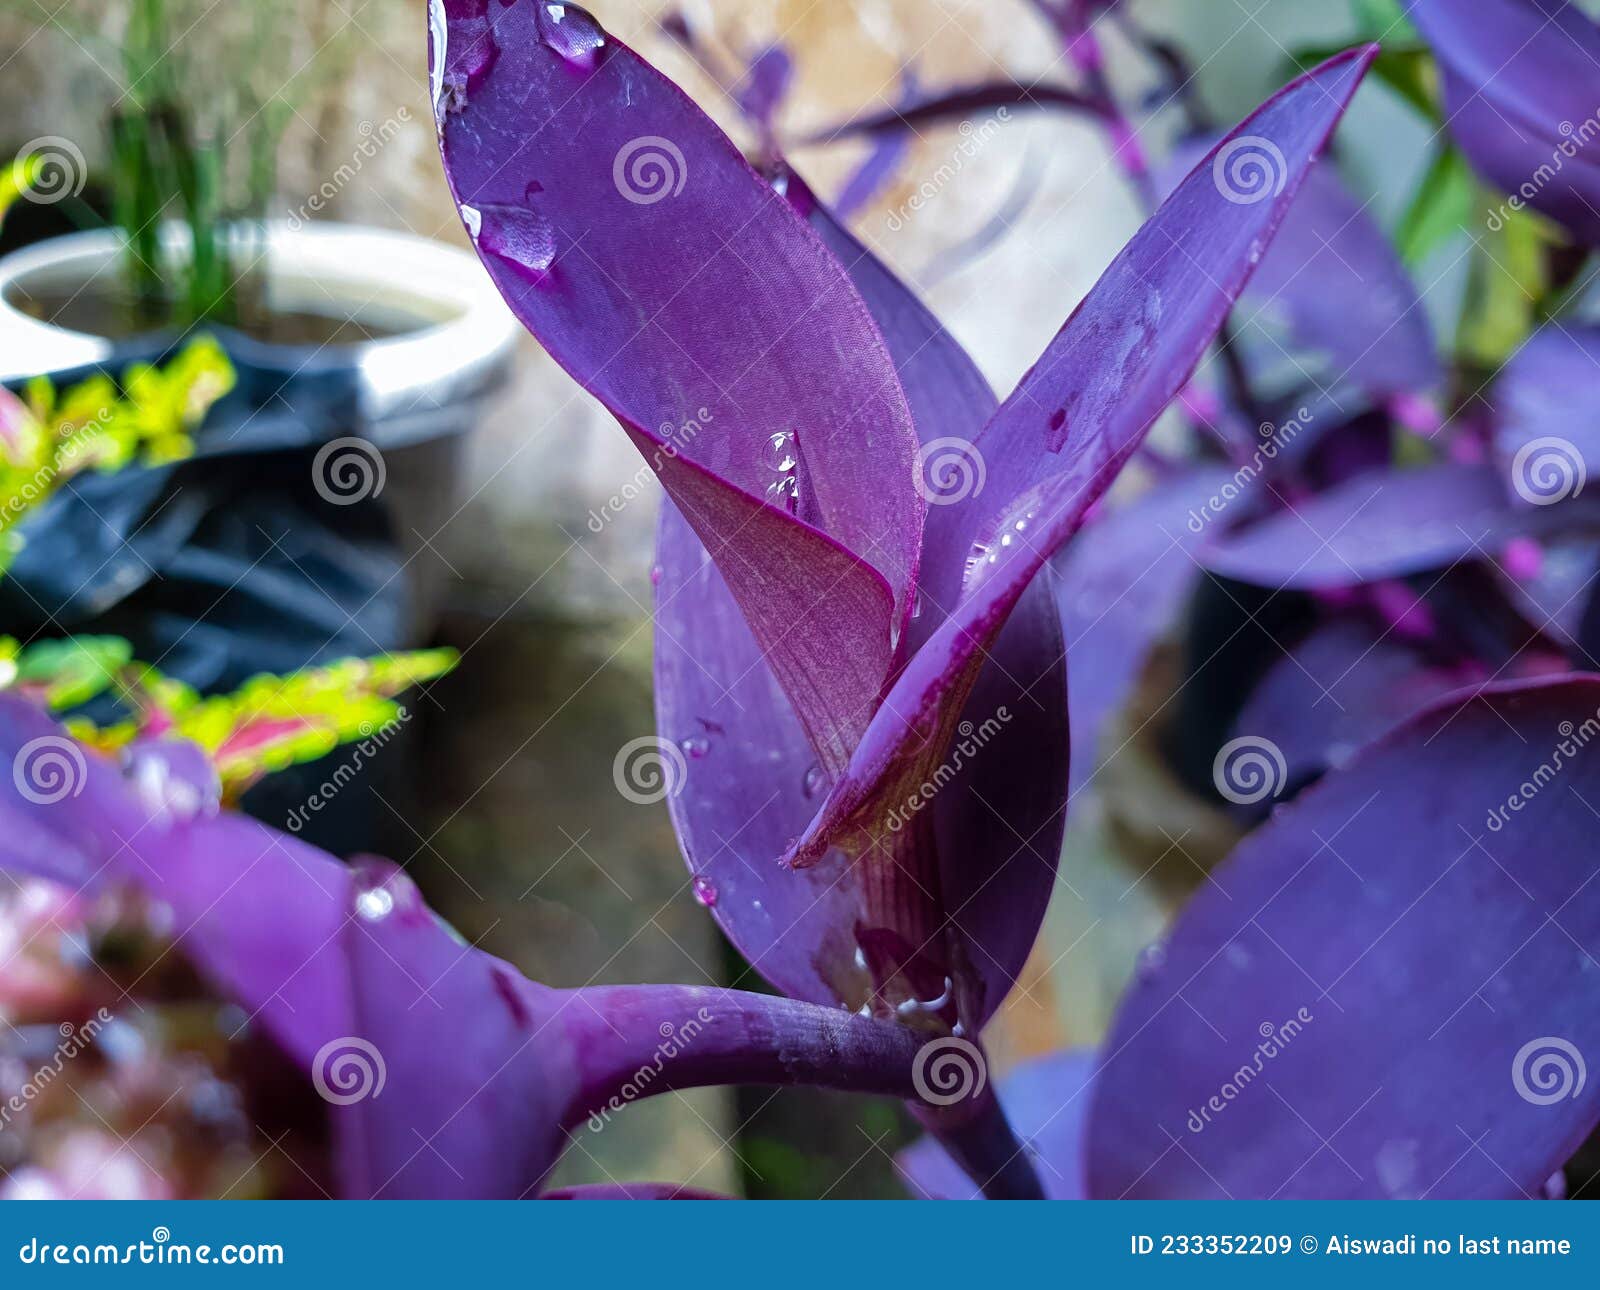 Plante à Fleurs De Croton Avec Couleur Feuille Violette Image stock - Image  du centrale, nature: 233352209